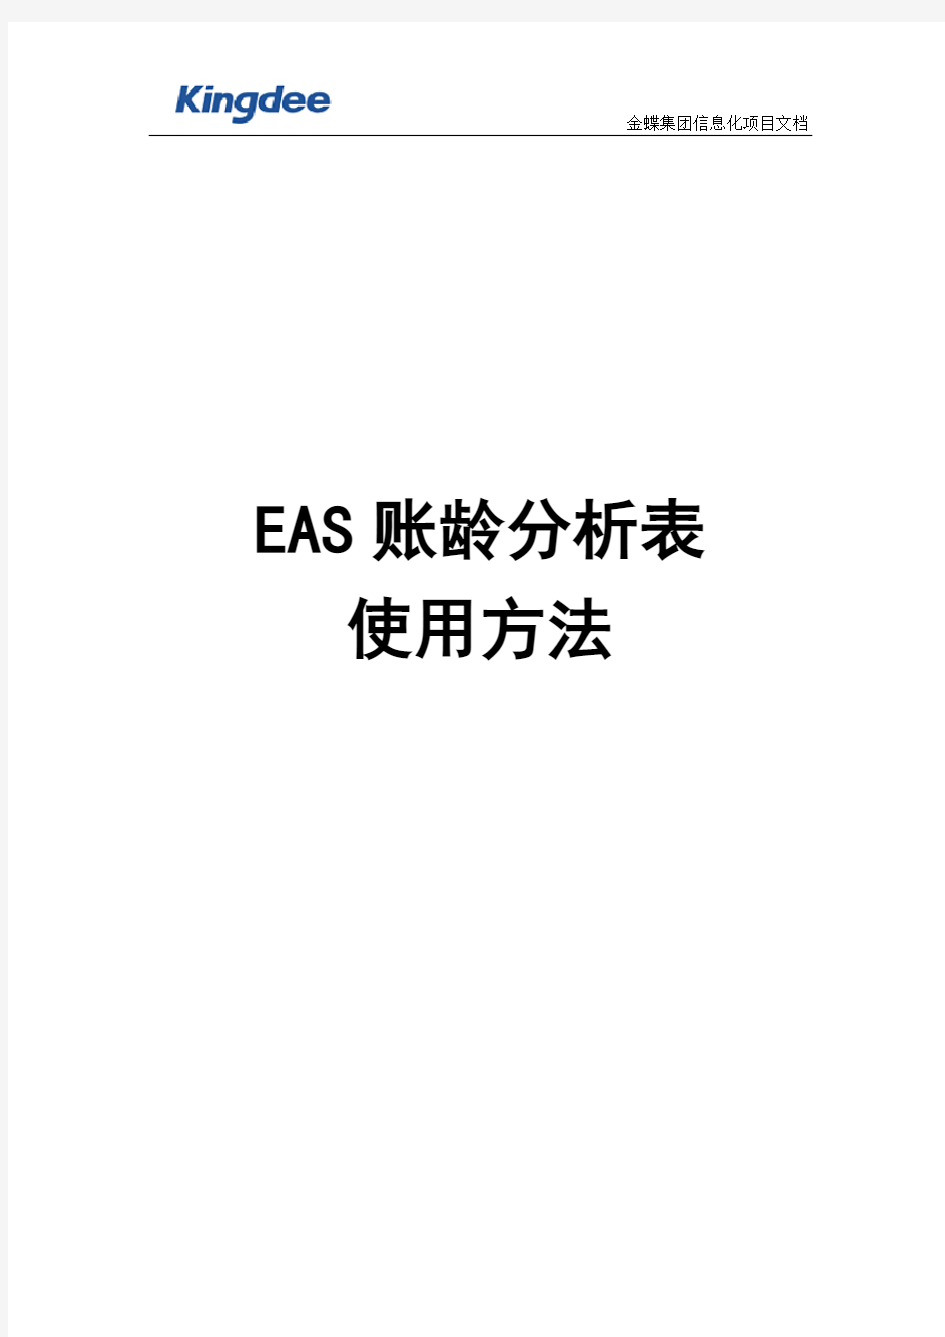 EAS账龄分析表使用方法